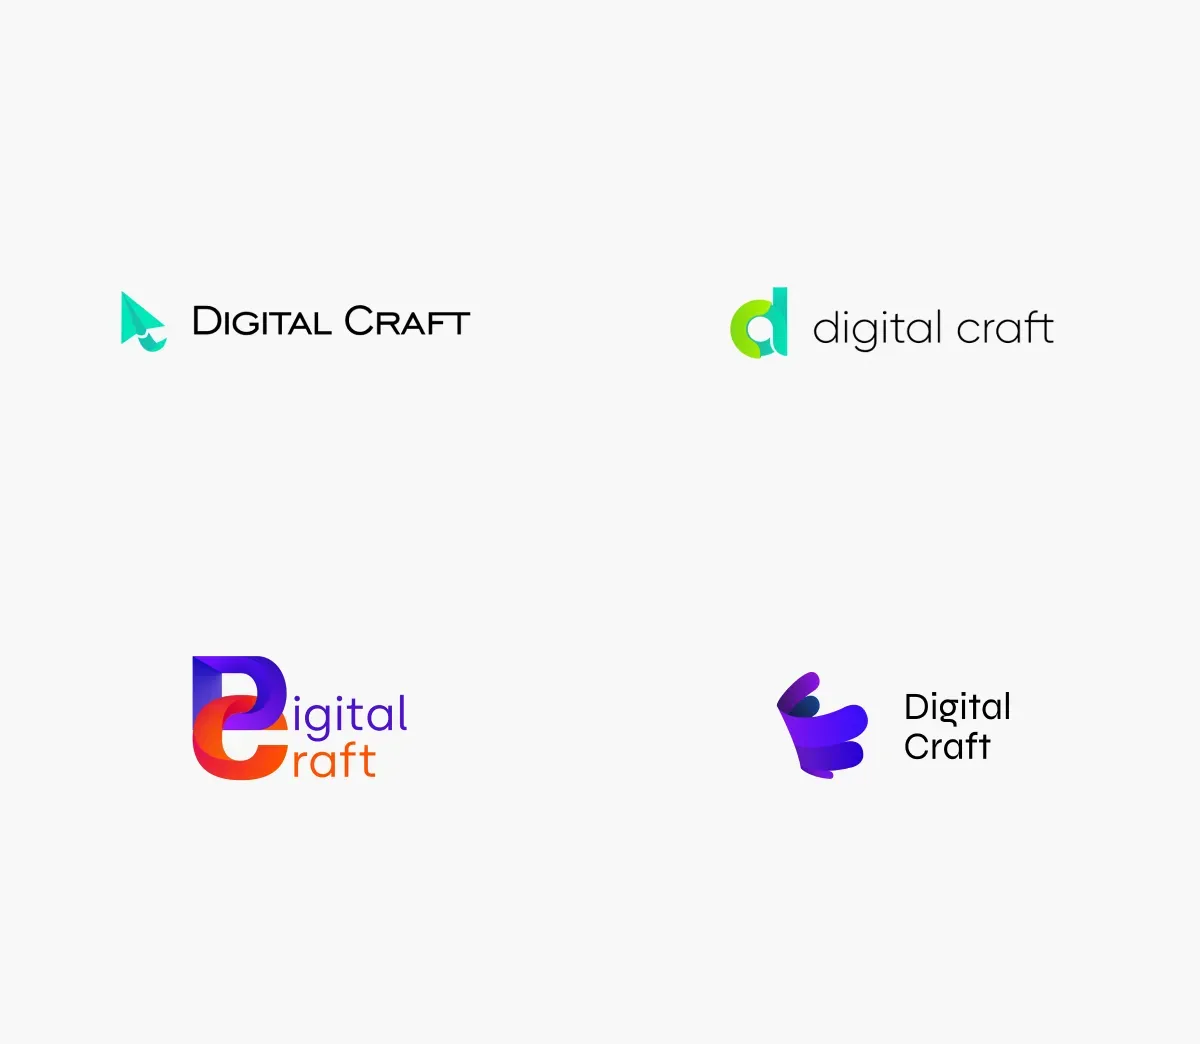 Digital Craft logo alternative versions